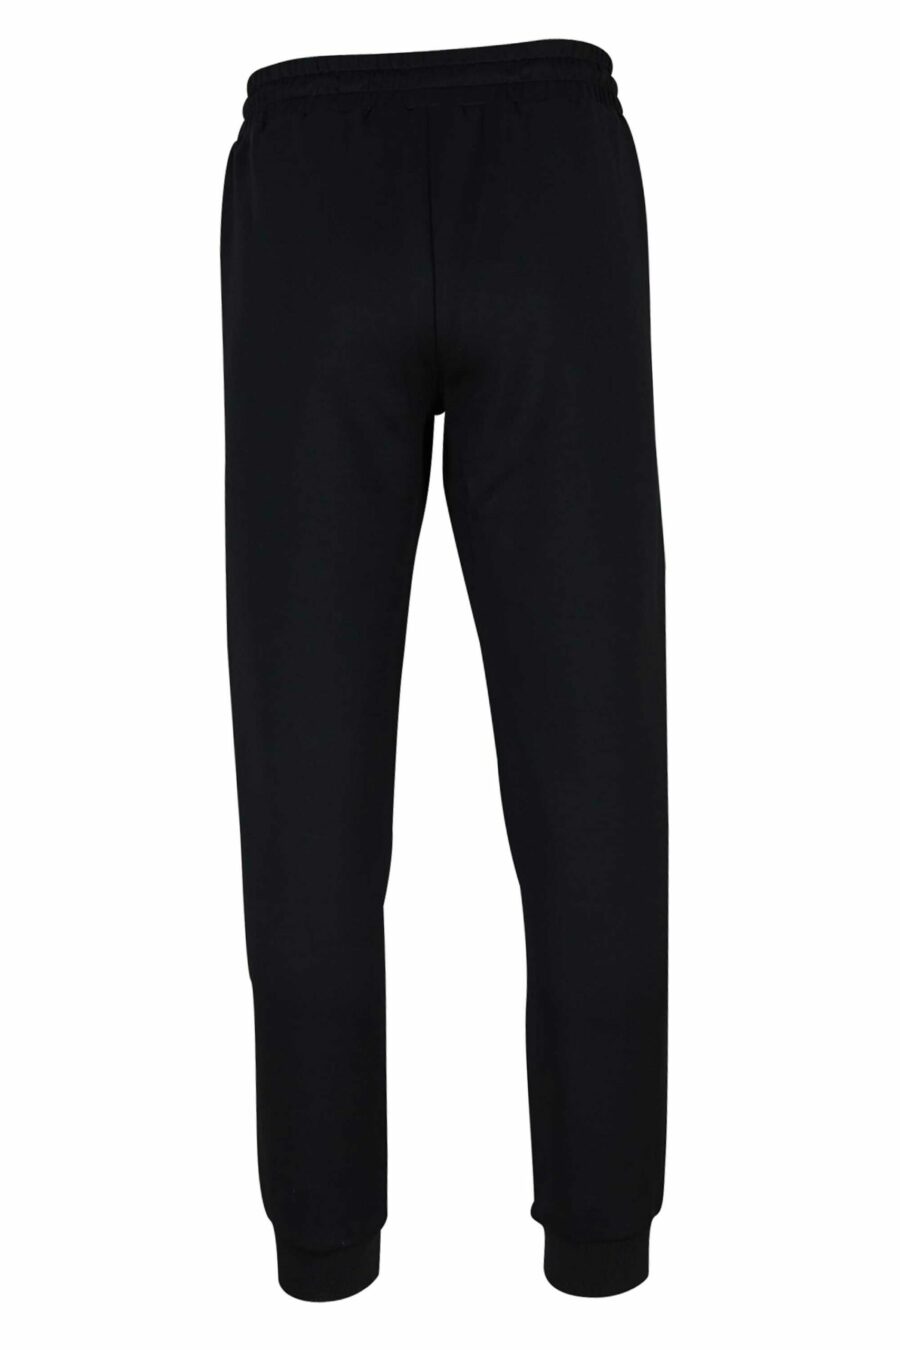 Pantalón de chándal negro con lineas blancas y logo en metal "lux identity" - 8057767646189 2 scaled